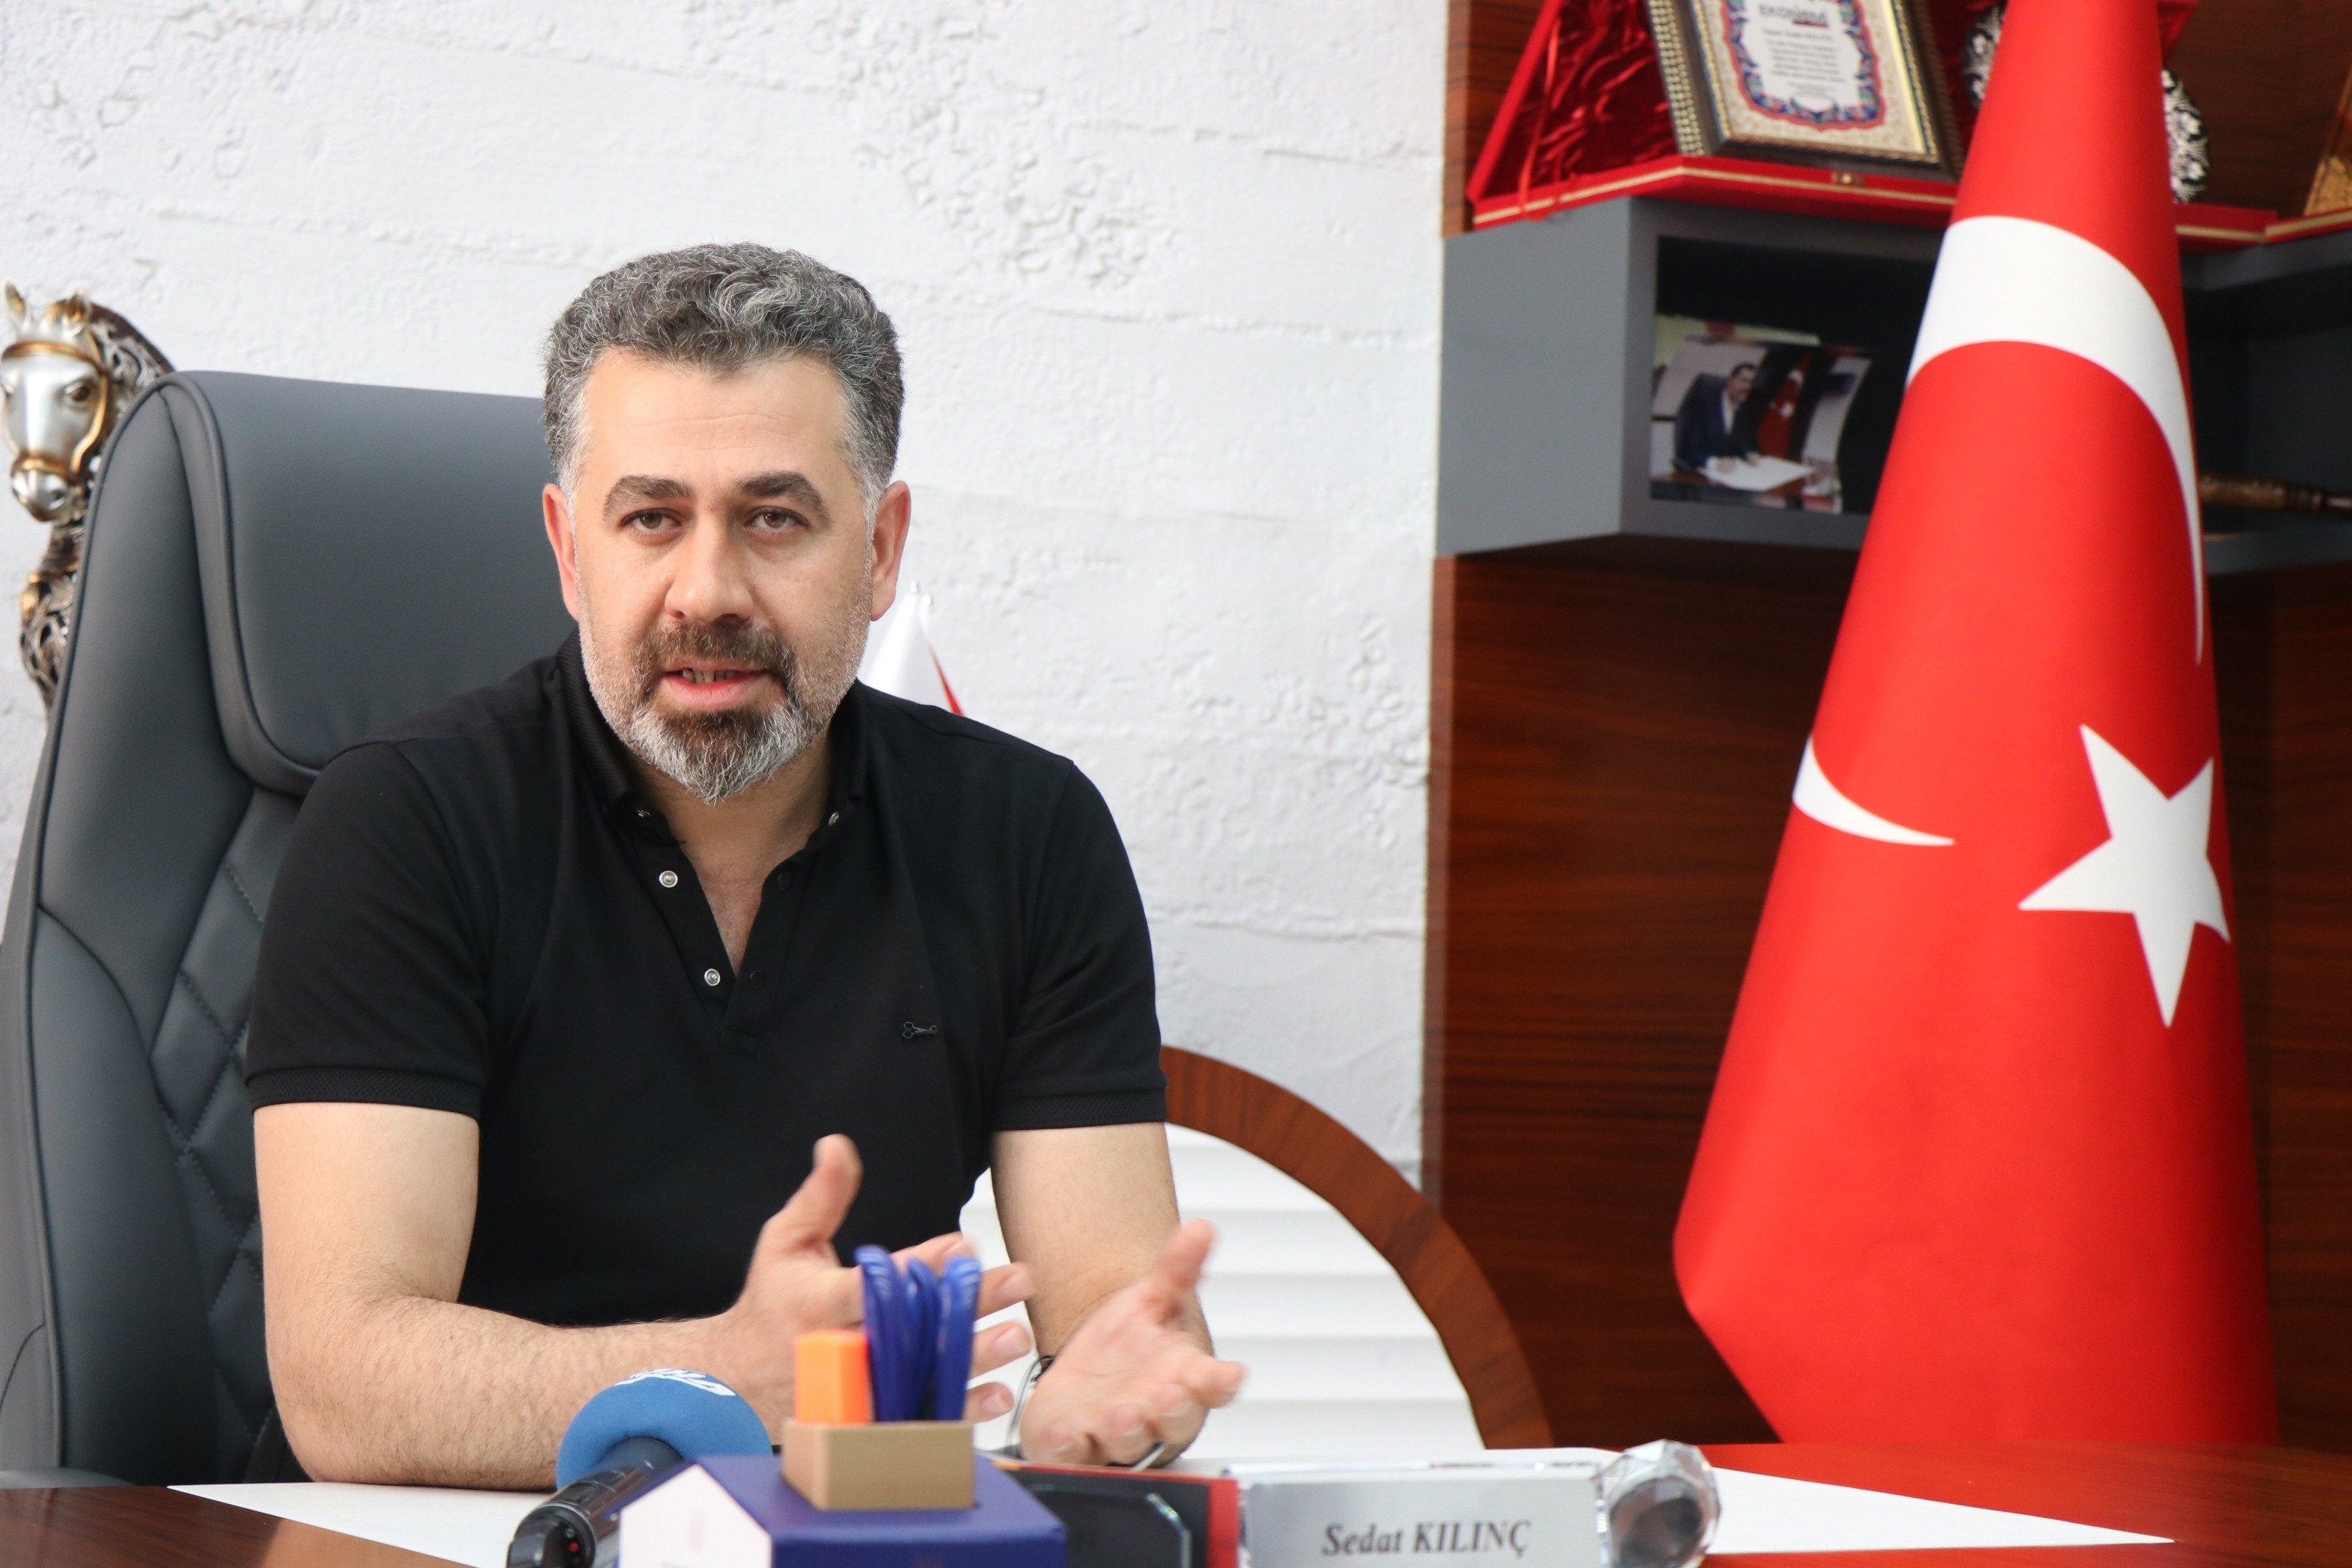 Sedat Kılınç: “Yabancılara gayrimenkul alımında vatandaşlık imkanı tanıyan 3 milyon dolarlık alt sınırın 300 bin dolara düşürülmesi sektörün önünü açacak”